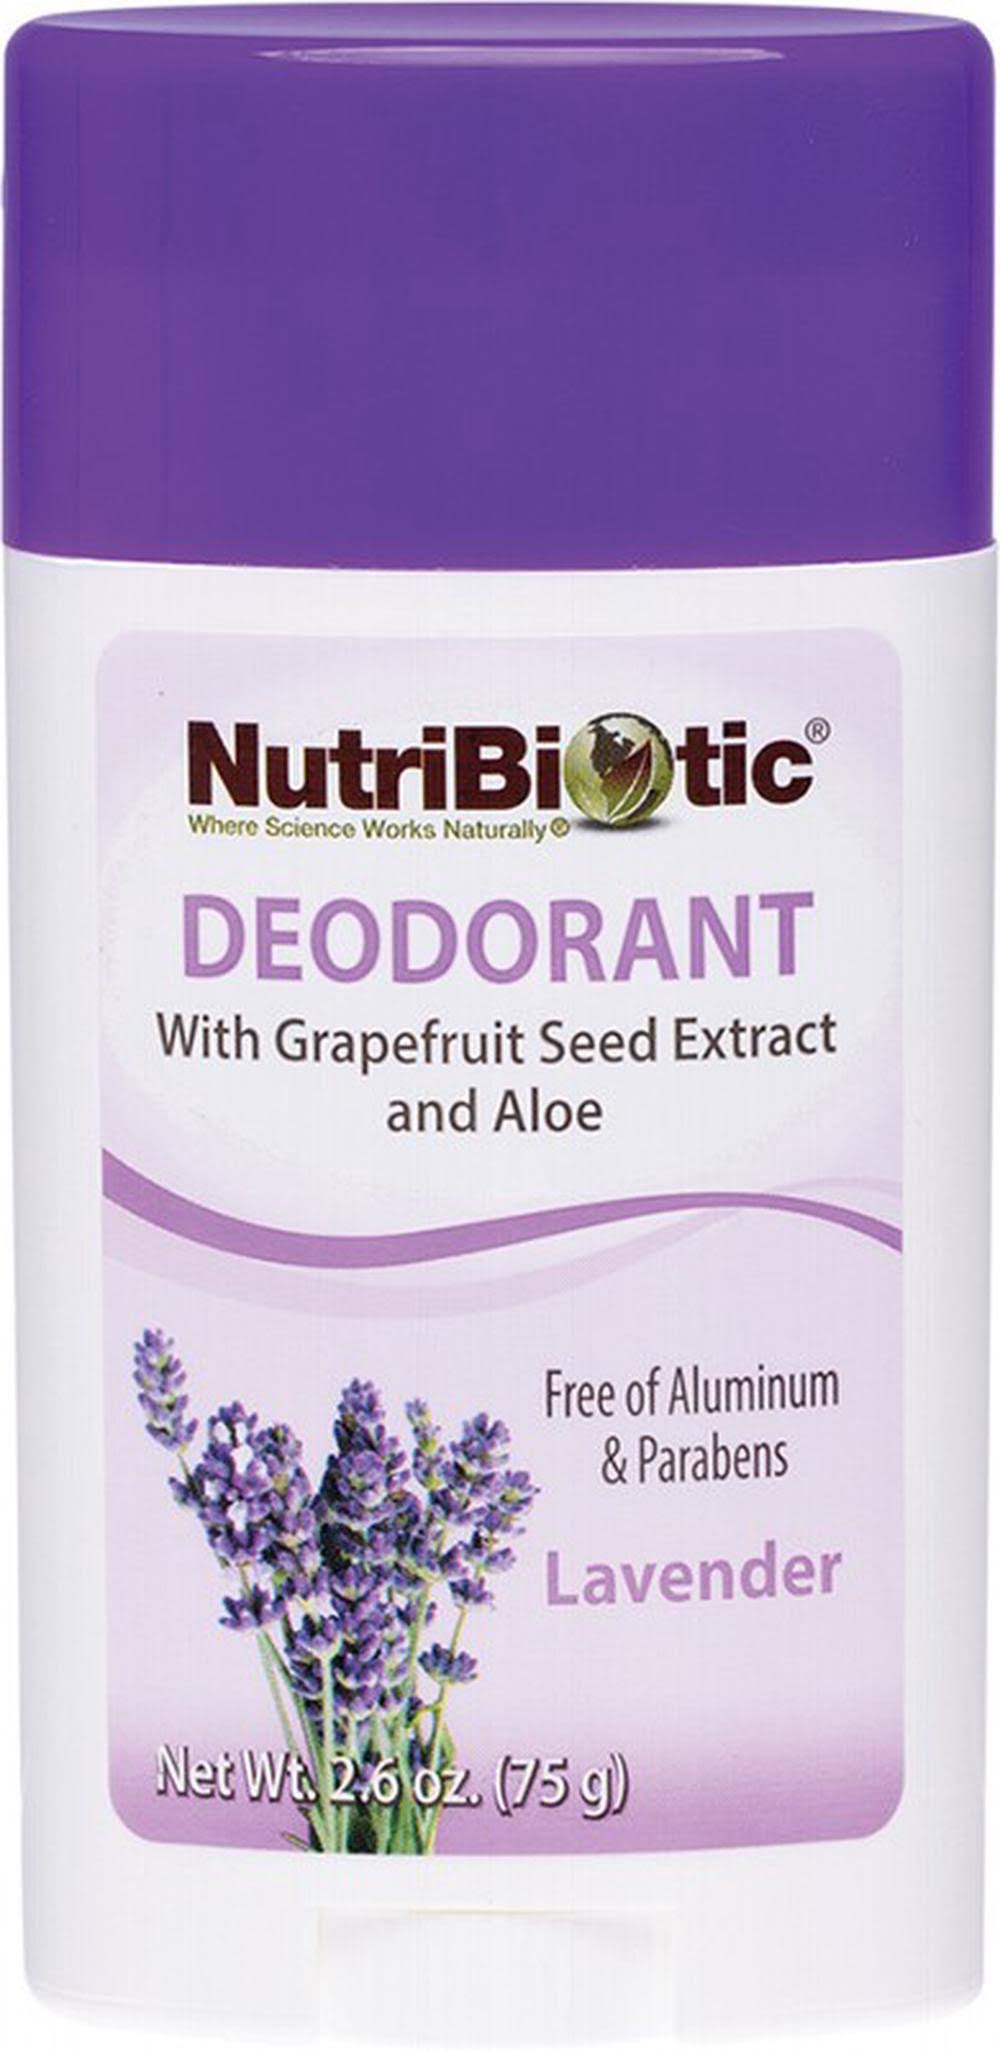 Nutribiotic Deodorant Stick - Lavender, 2.6 oz